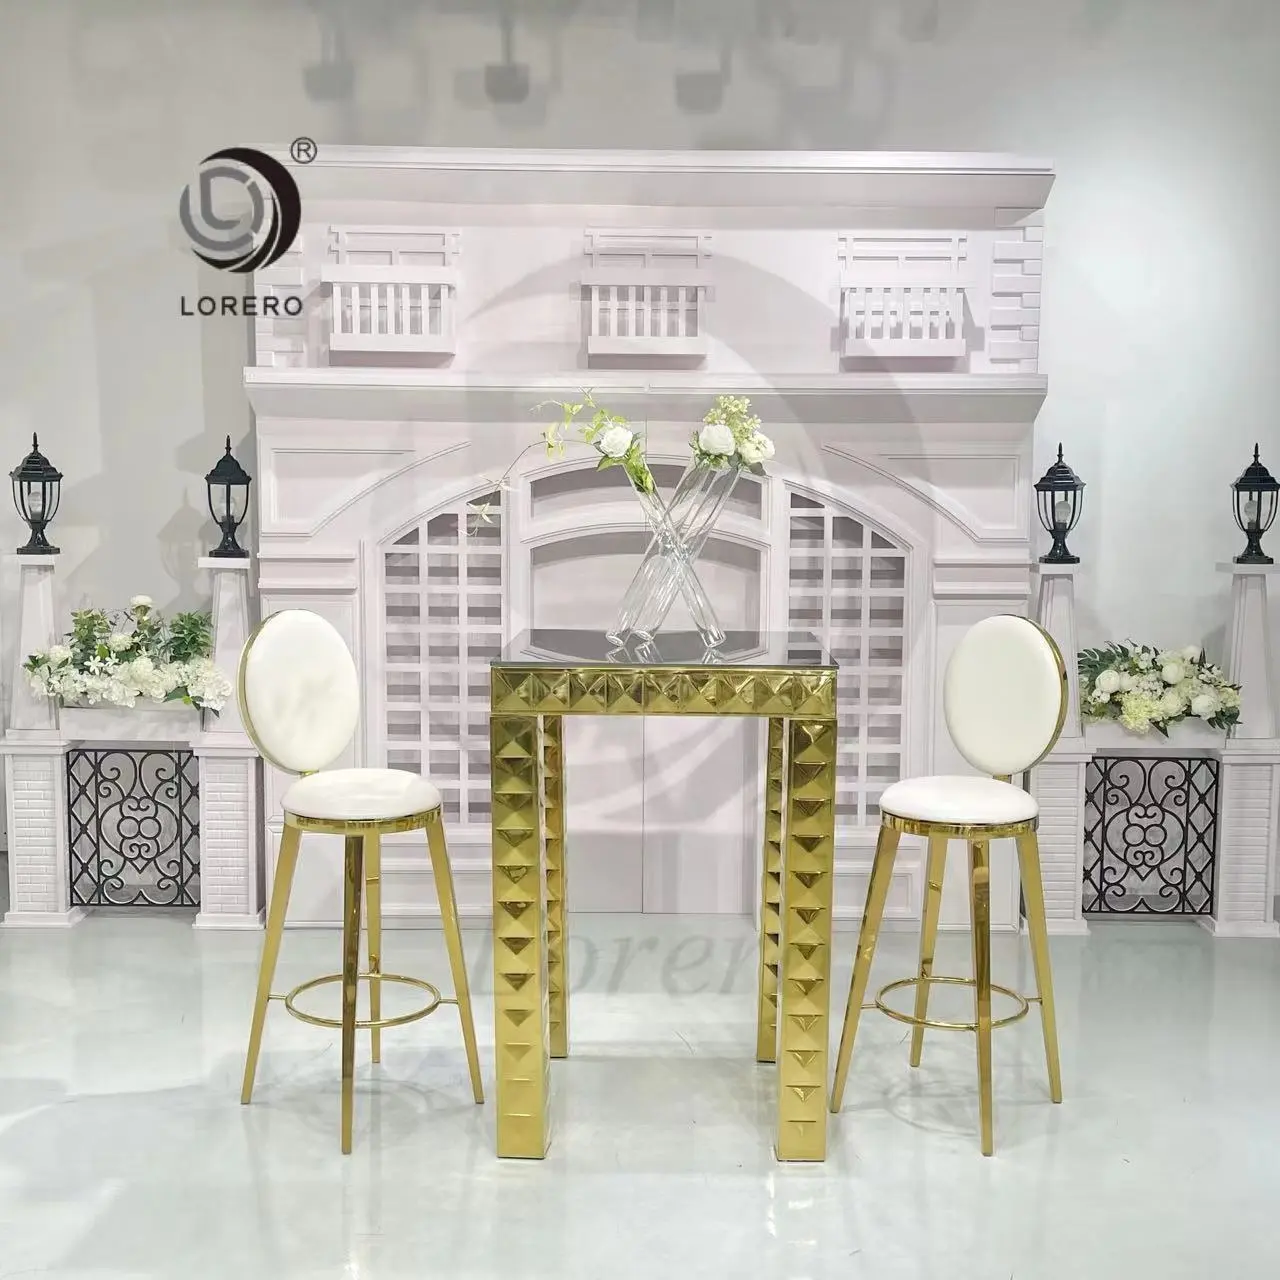 Casamento mobiliário ouro quadro vidro superior aço inoxidável quadrado bar tabela